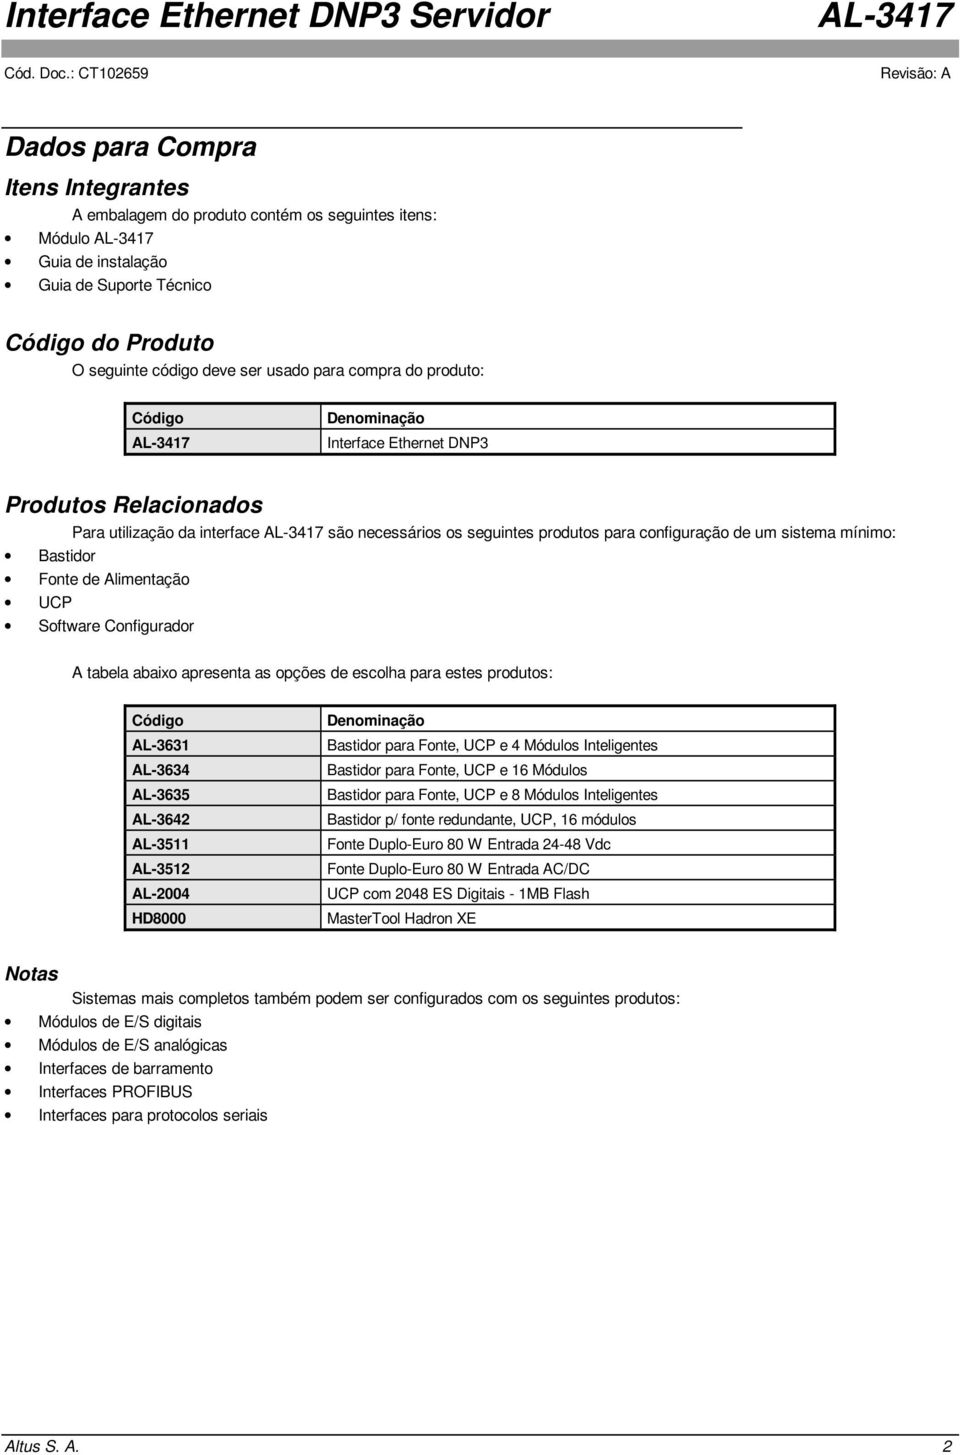 limentação UCP Software Configurador tabela abaixo apresenta as opções de escolha para estes produtos: Código -3631-3634 -3635-3642 -3511-3512 -2004 HD8000 Denominação Bastidor para Fonte, UCP e 4